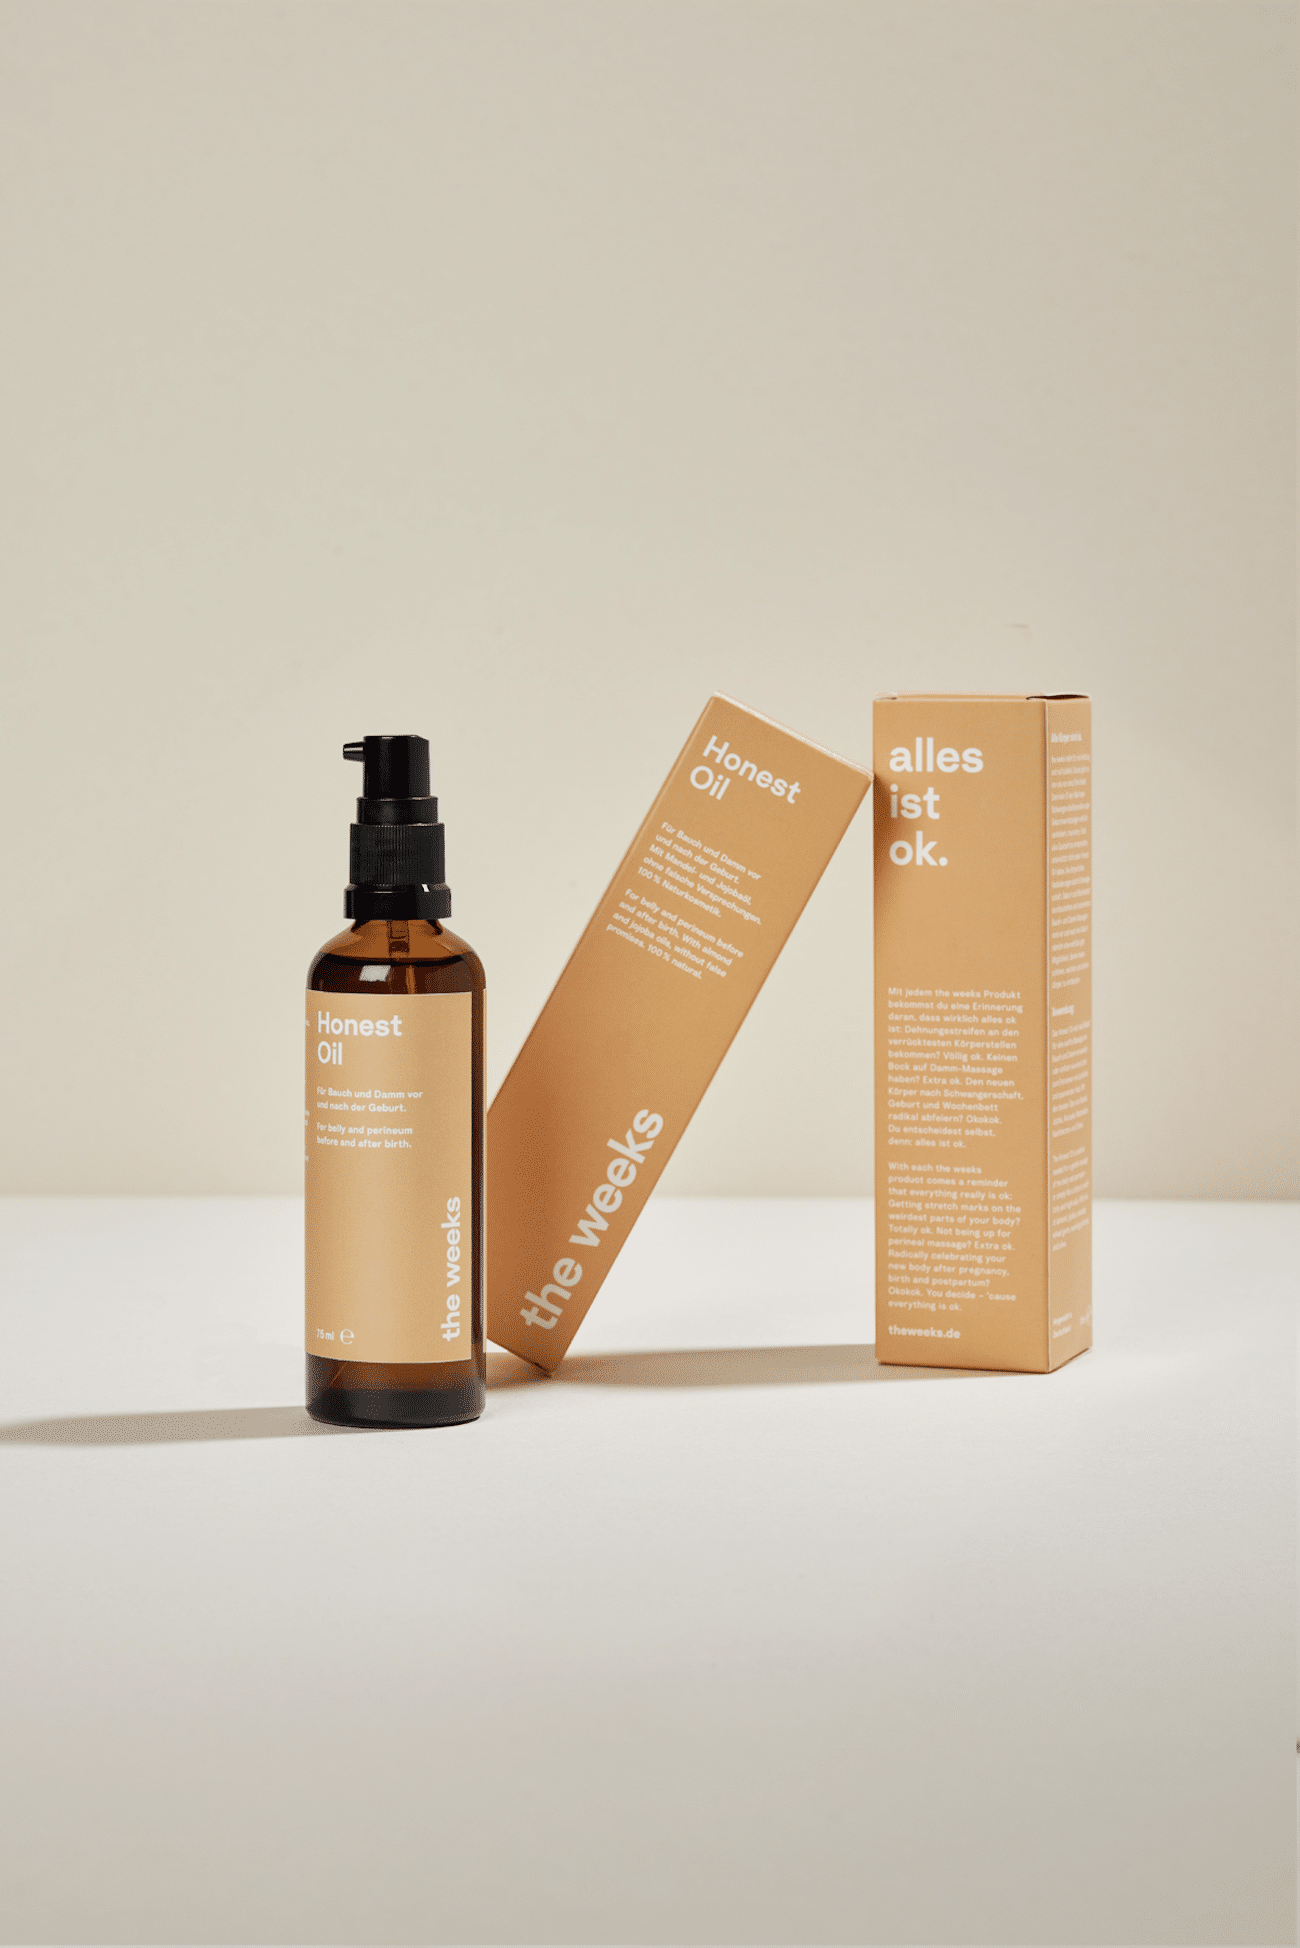 Produktshot Öl-Flakon braun mit orangenem Packaging; Honest Oil von the weeks